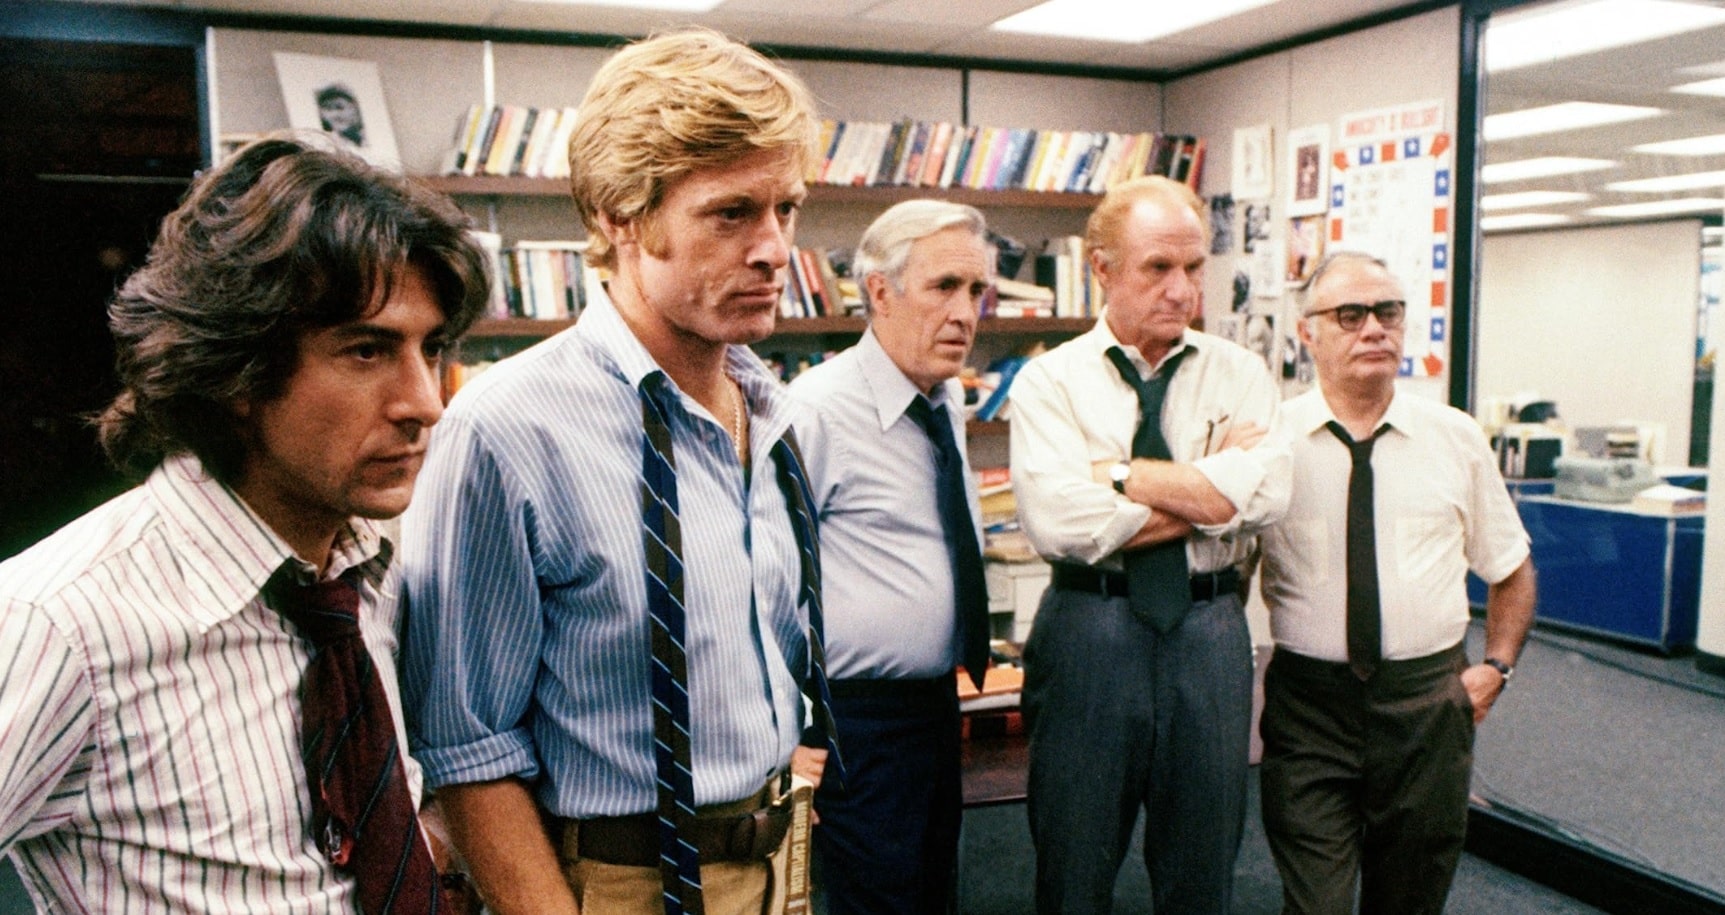 All the President's Men (1976)